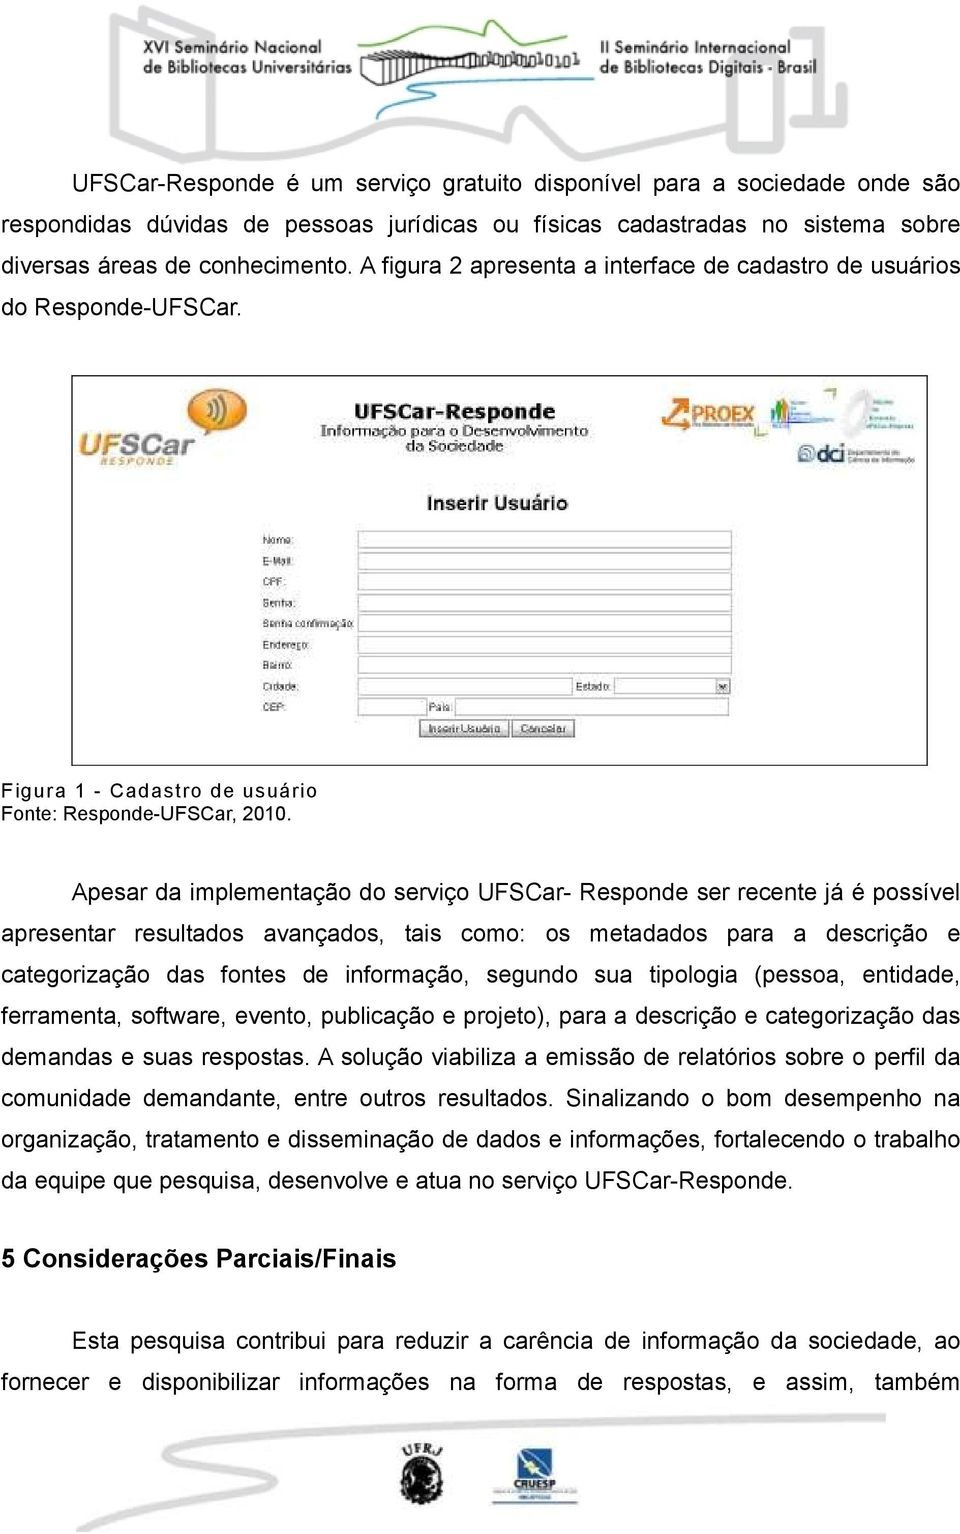 Apesar da implementação do serviço UFSCar- Responde ser recente já é possível apresentar resultados avançados, tais como: os metadados para a descrição e categorização das fontes de informação,